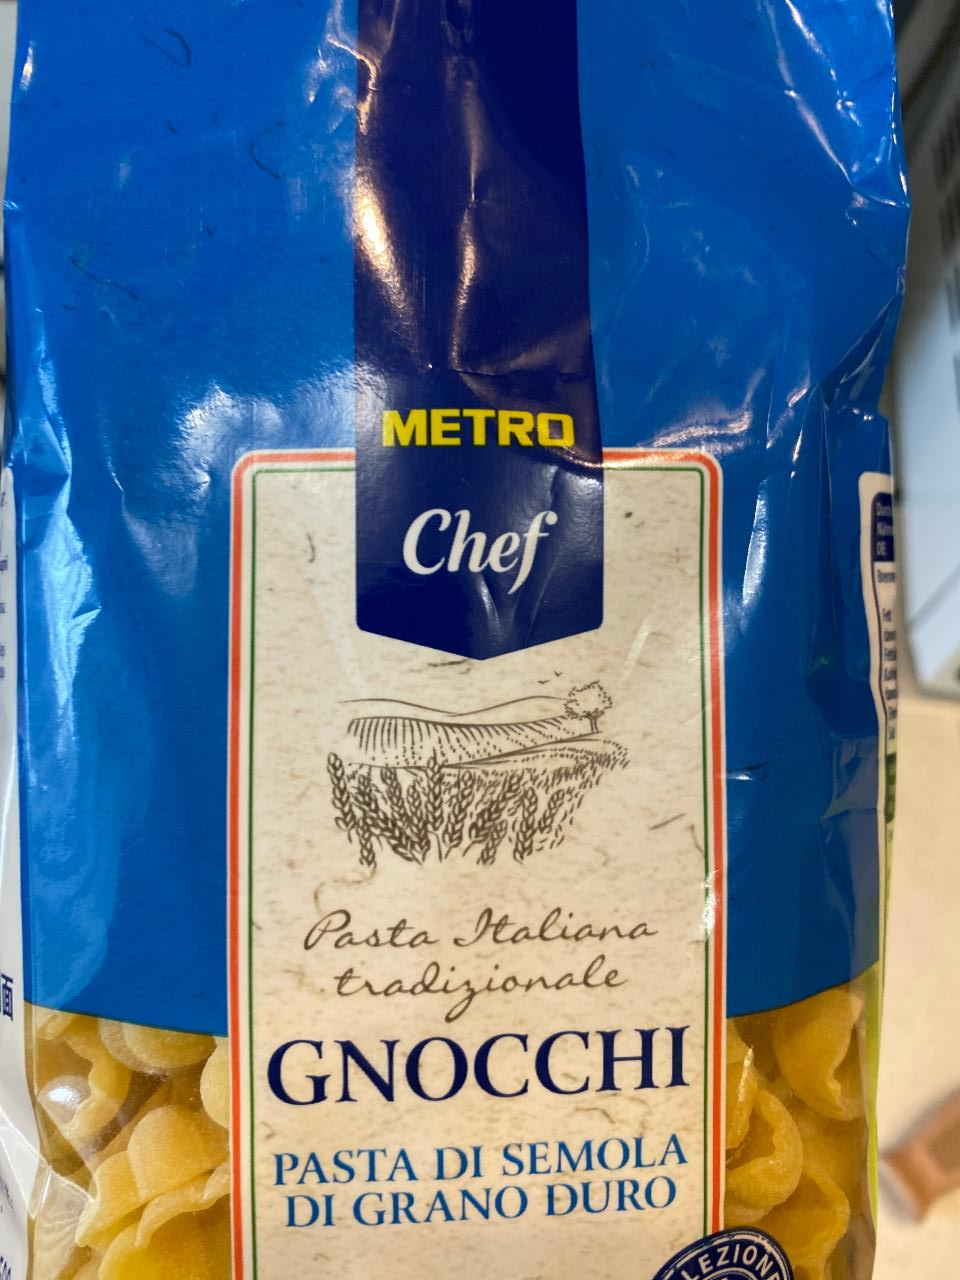 Фото - Макароны Gnocchi Metro Chef